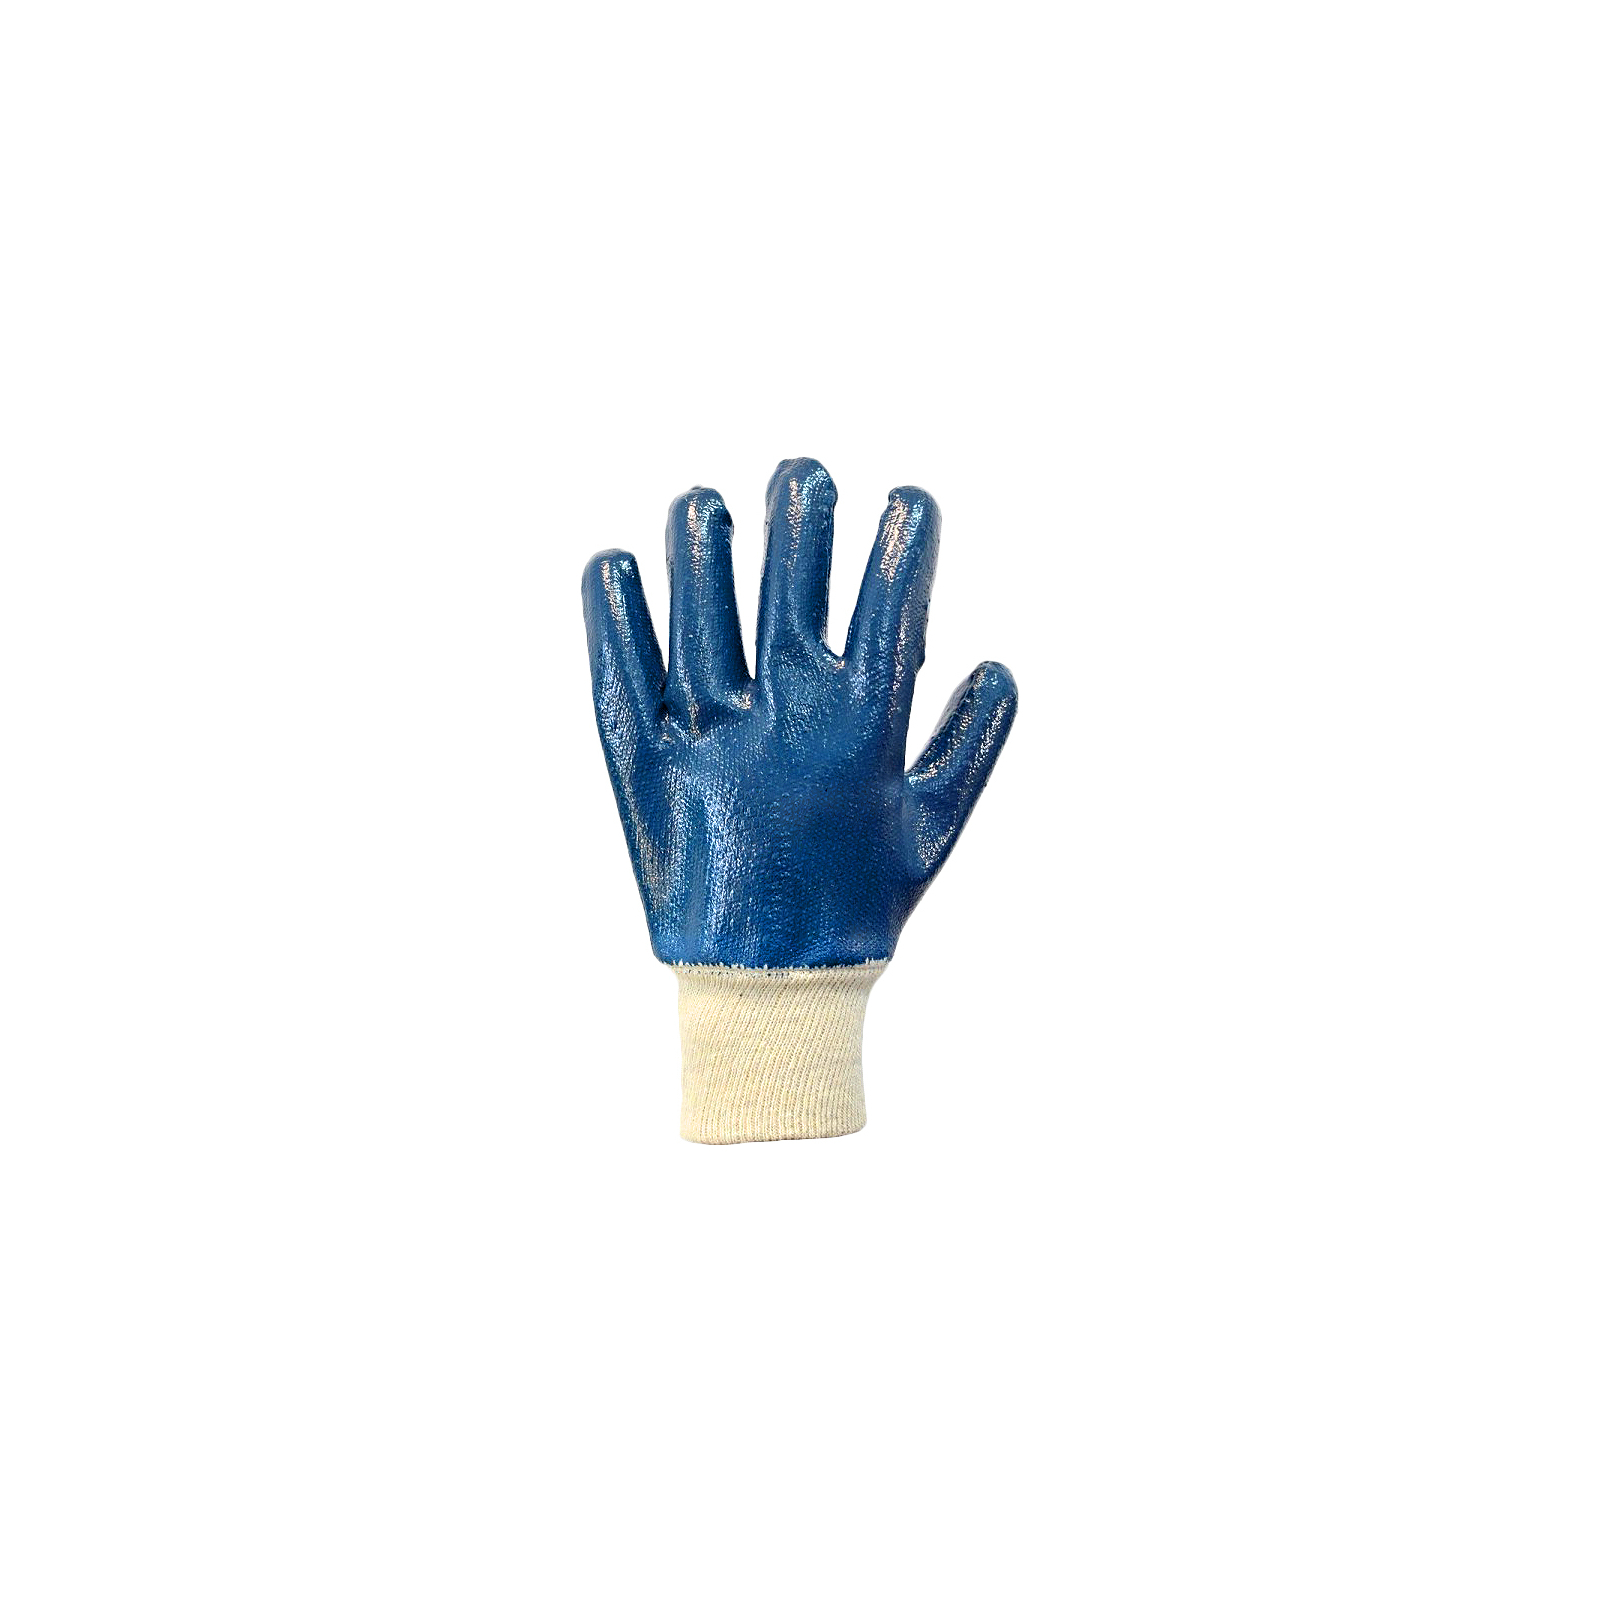 Защитные перчатки Stark нитрил 10 шт (510601710.10) изображение 2